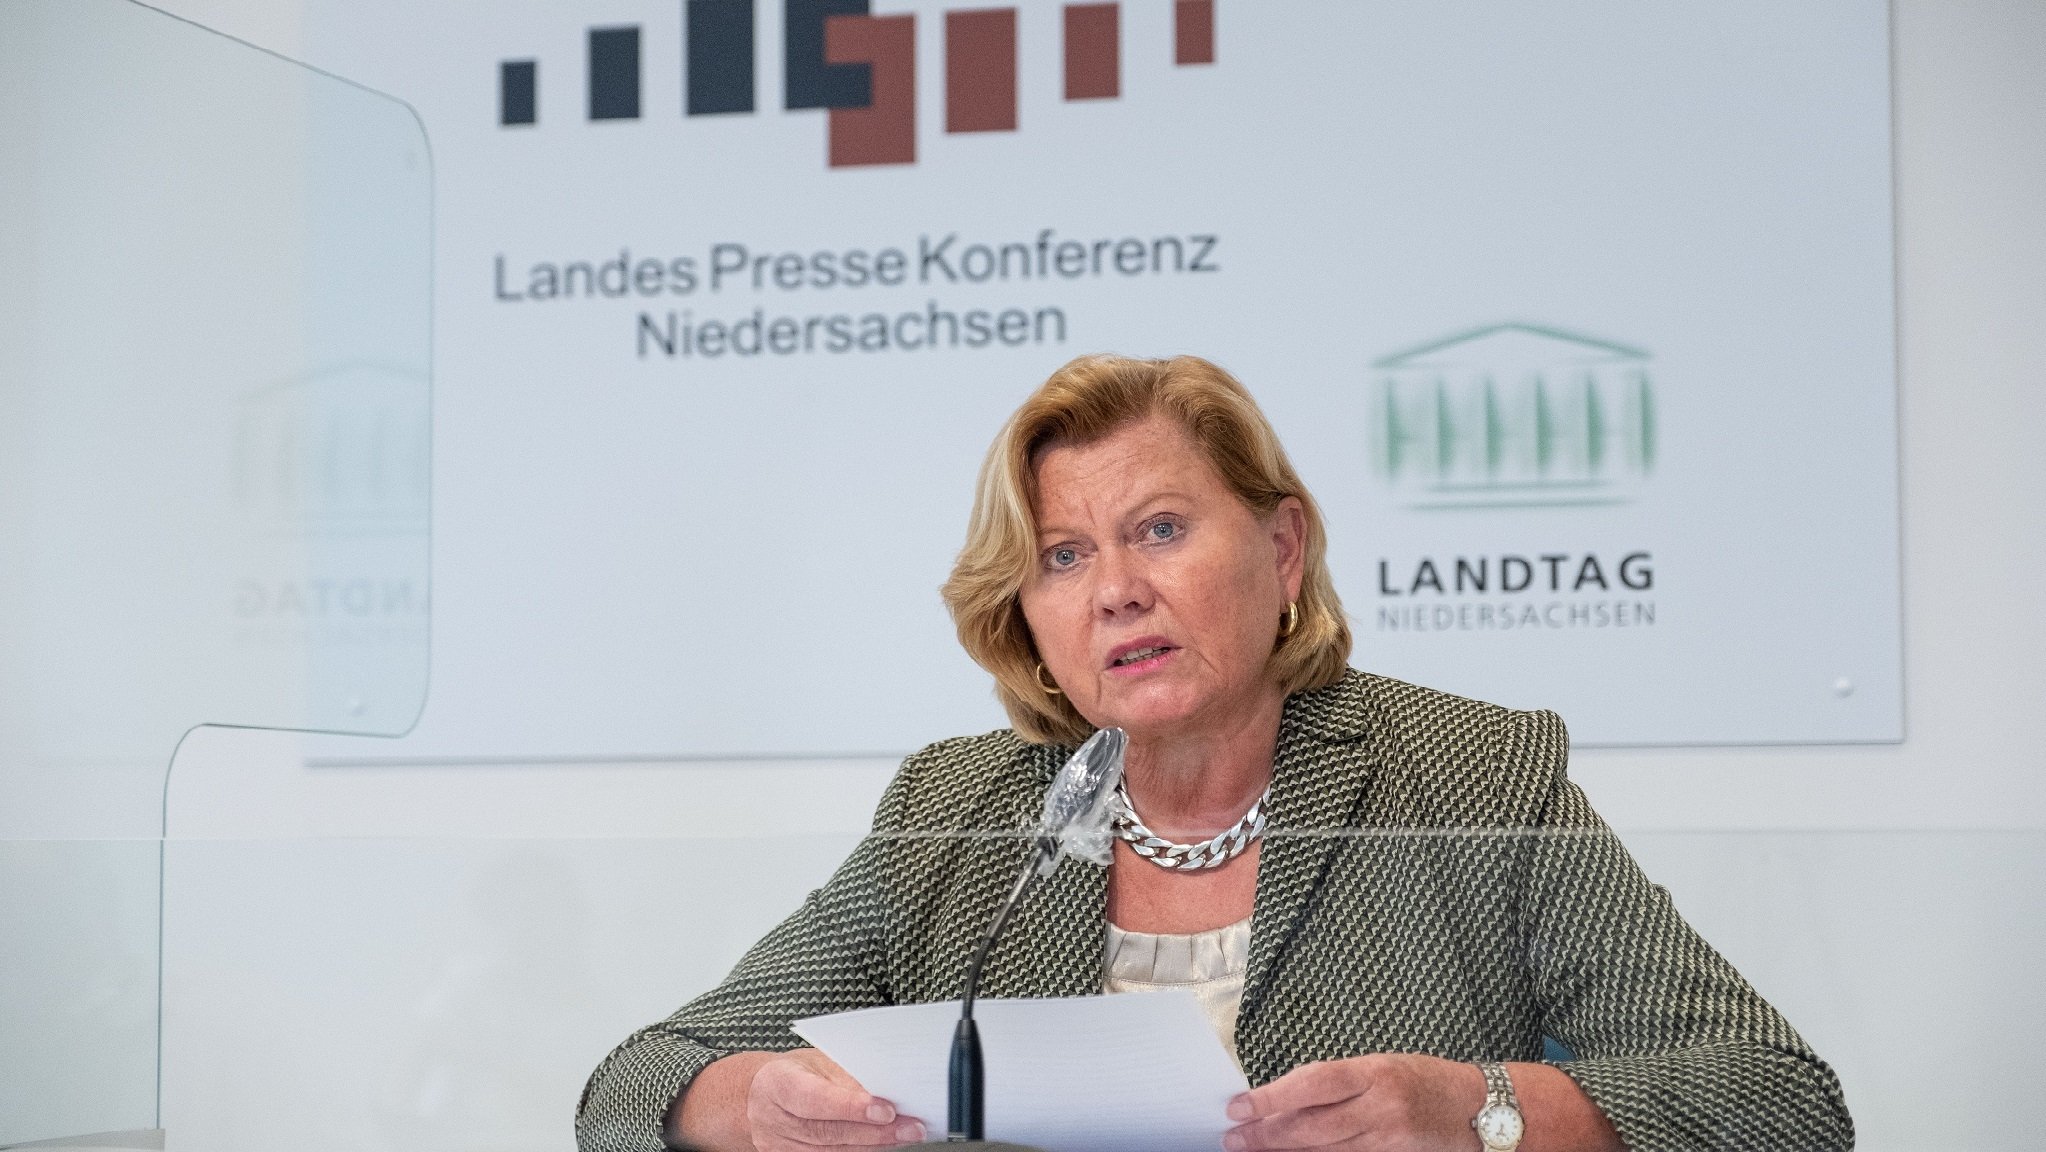 Barbara Thiel, Landesdatenschutzbeauftragte in Niedersachsen, spricht während einer Pressekonferenz im Landtag zum Tätigkeitsbericht 2019.